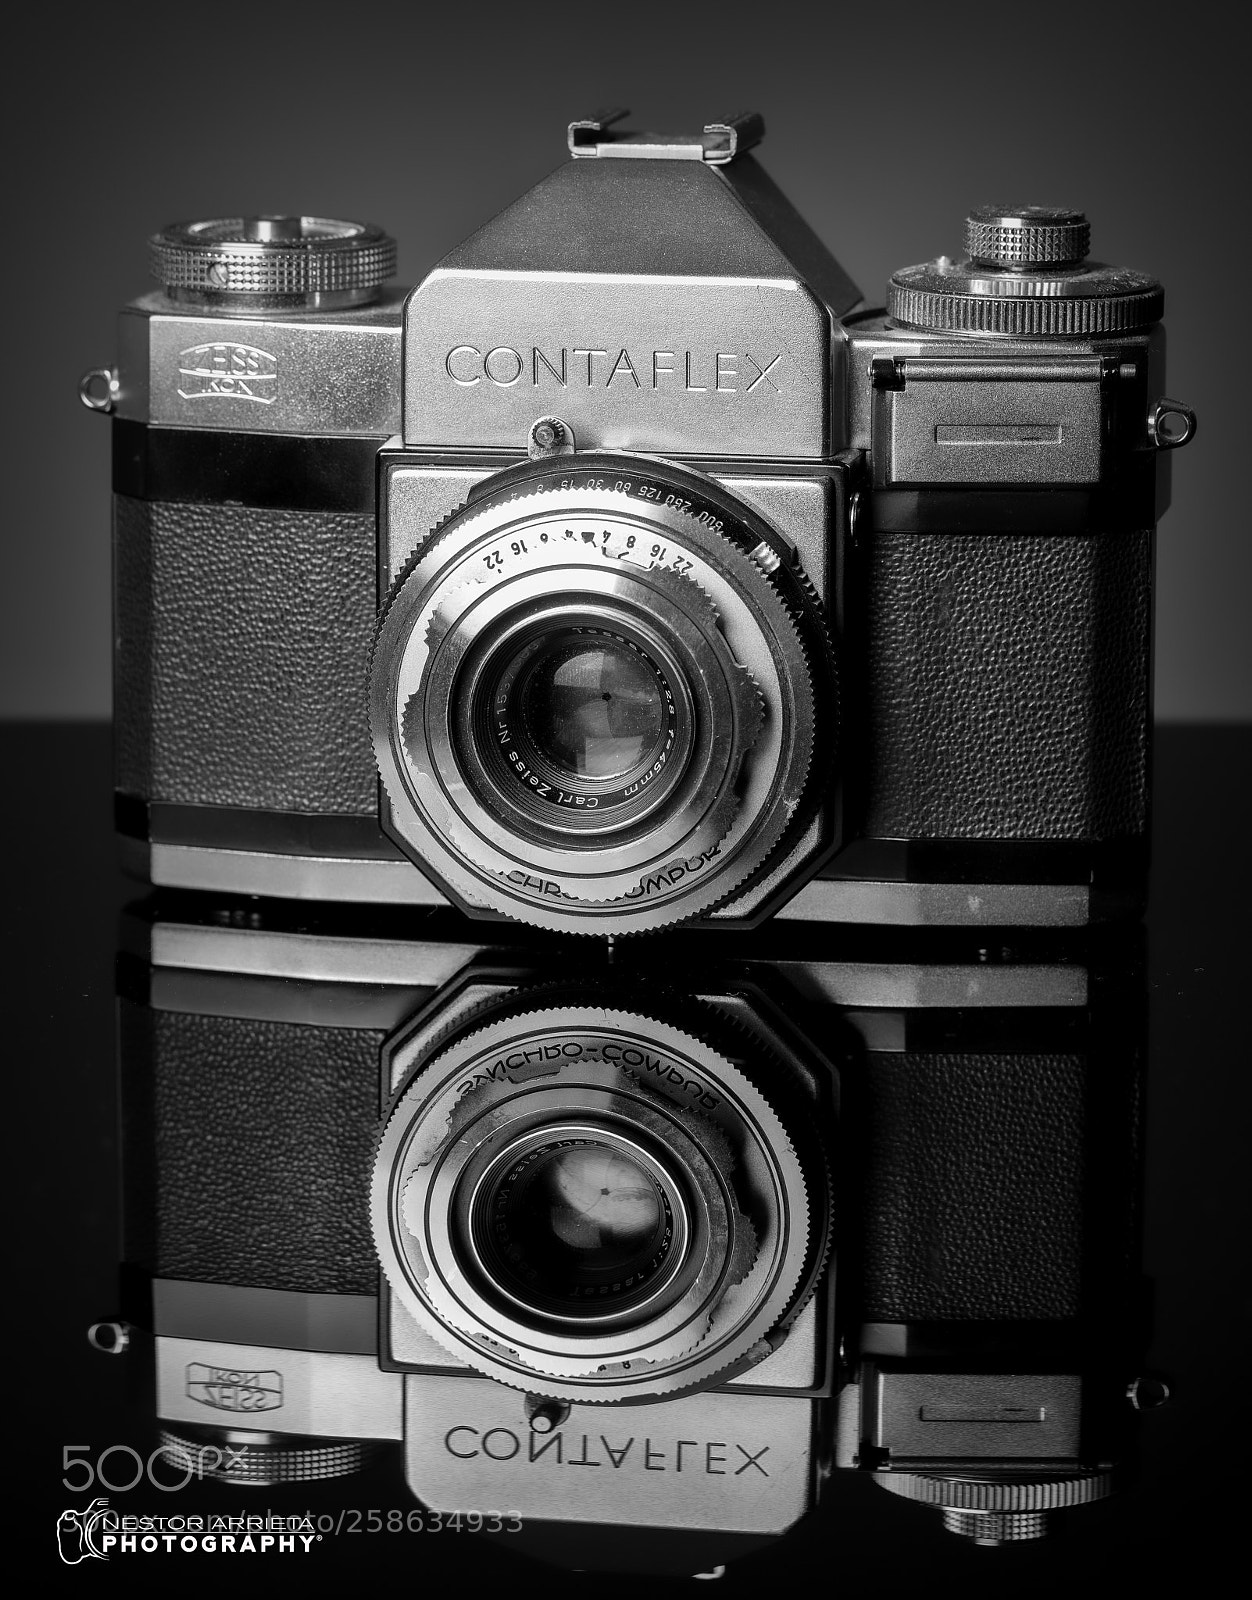 Canon EOS 5DS R sample photo. Contaflex photography